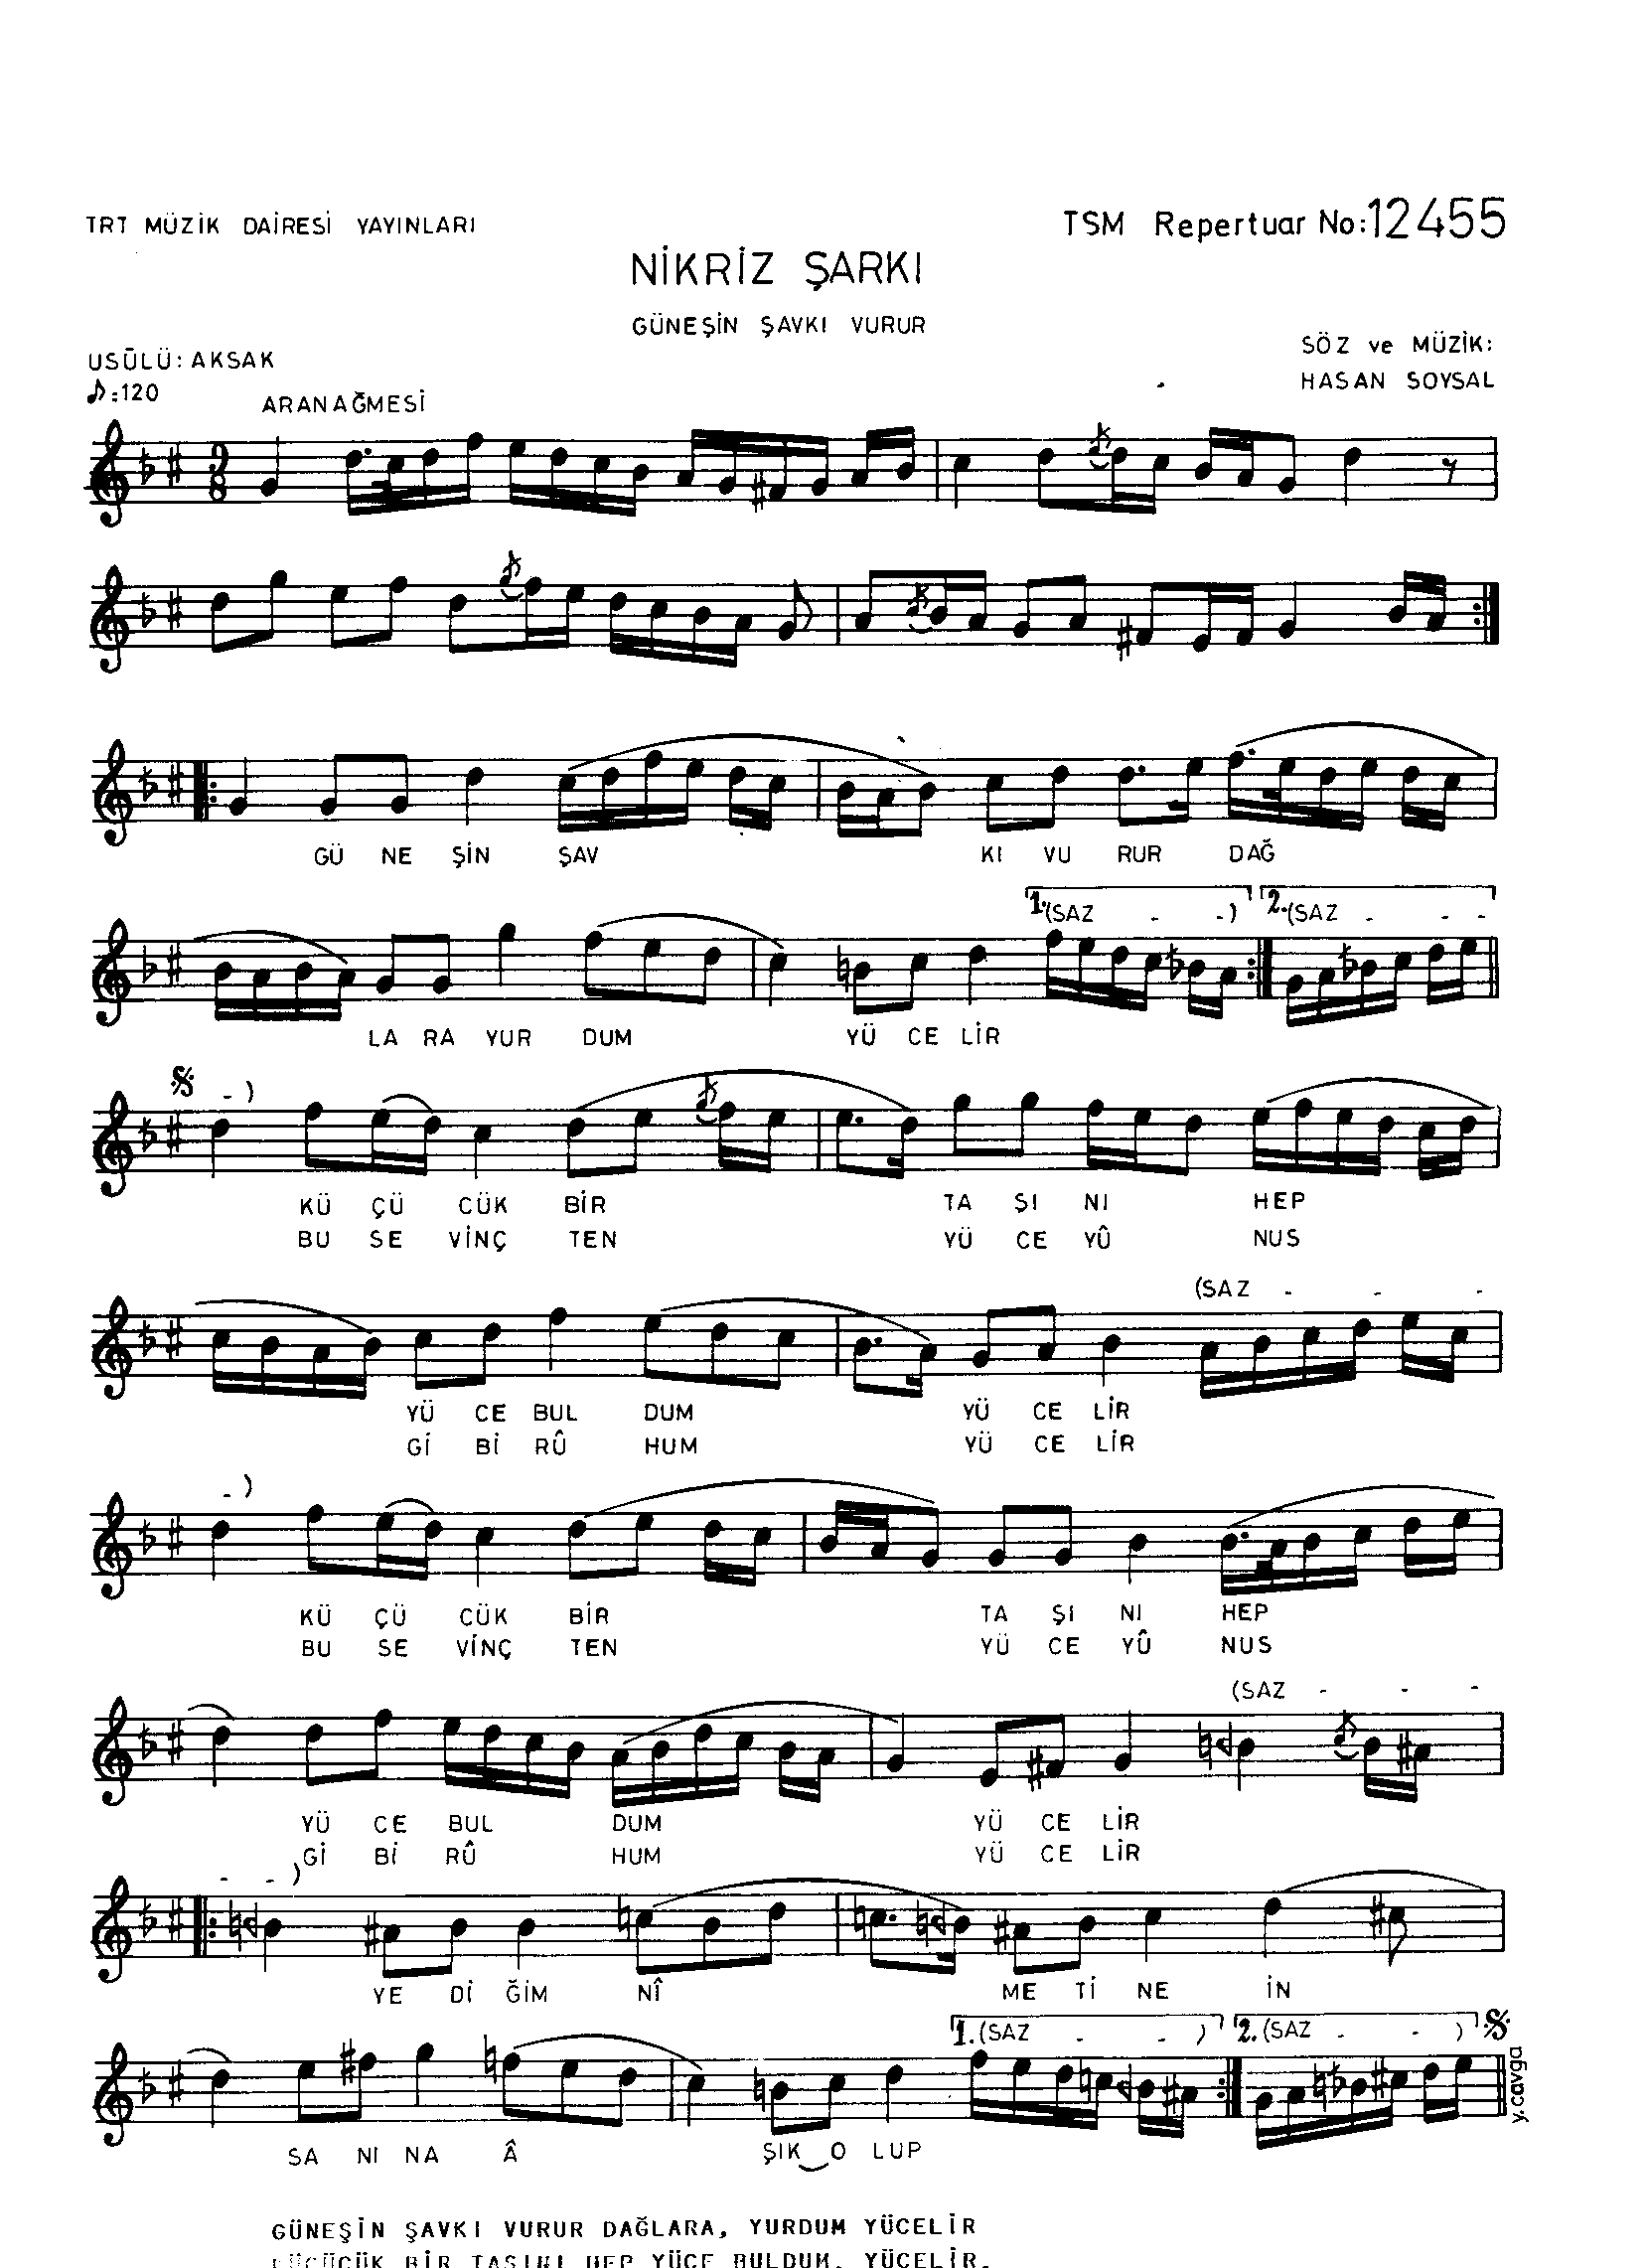 Nikrîz - Şarkı - Hasan Soysal - Sayfa 1